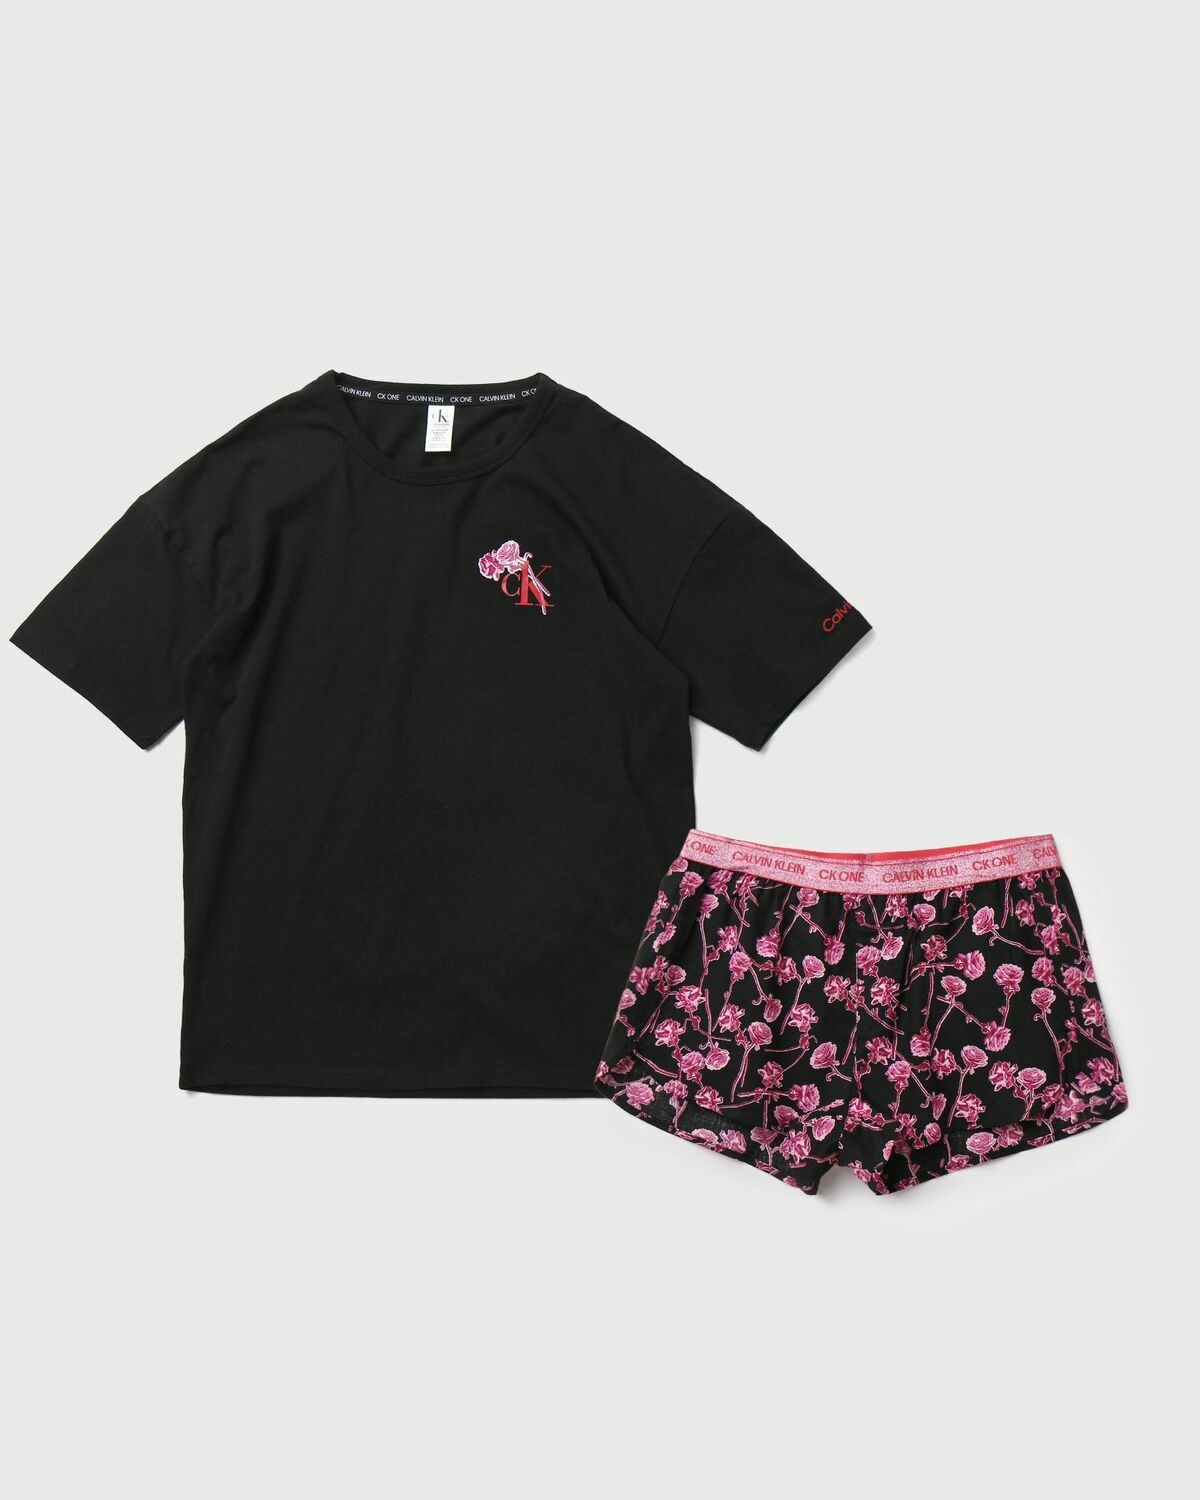 Calvin Klein Underwear S/S Short Set Black - Womens - Sleep & Loungewear  Calvin Klein Underwear